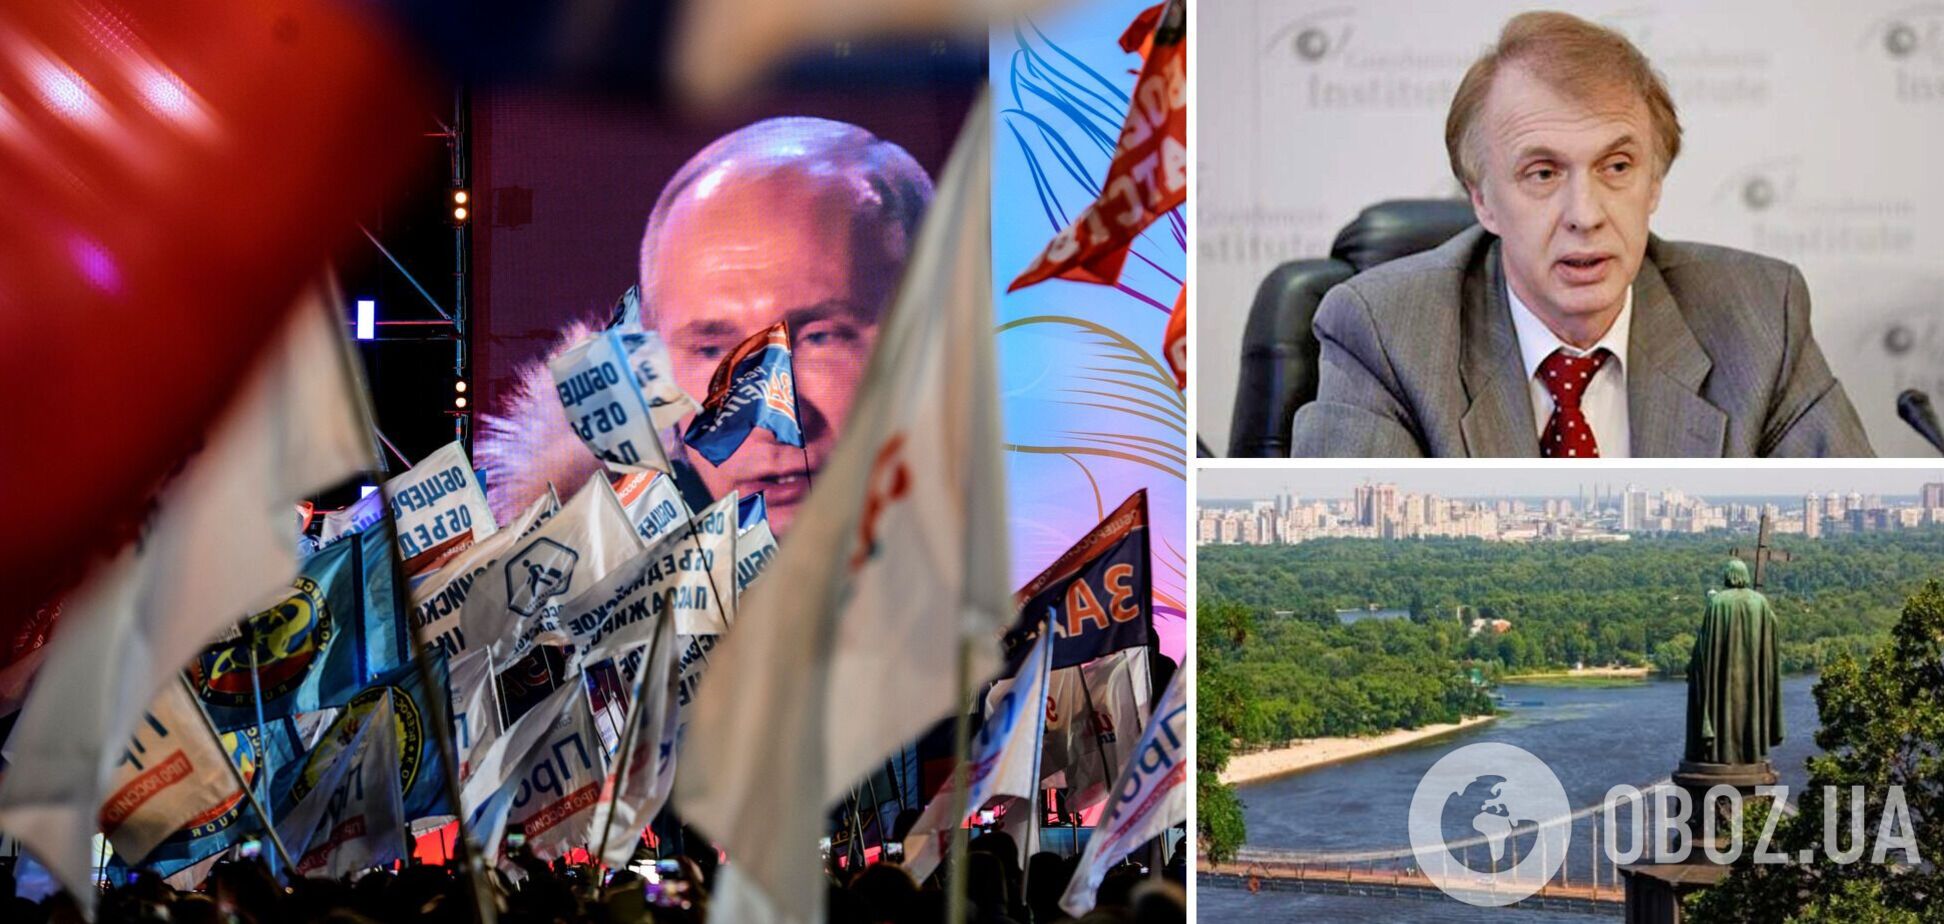 Огризко: Україна загрожує Путіну, йому треба врятувати міф про 'один народ'. Інтерв’ю